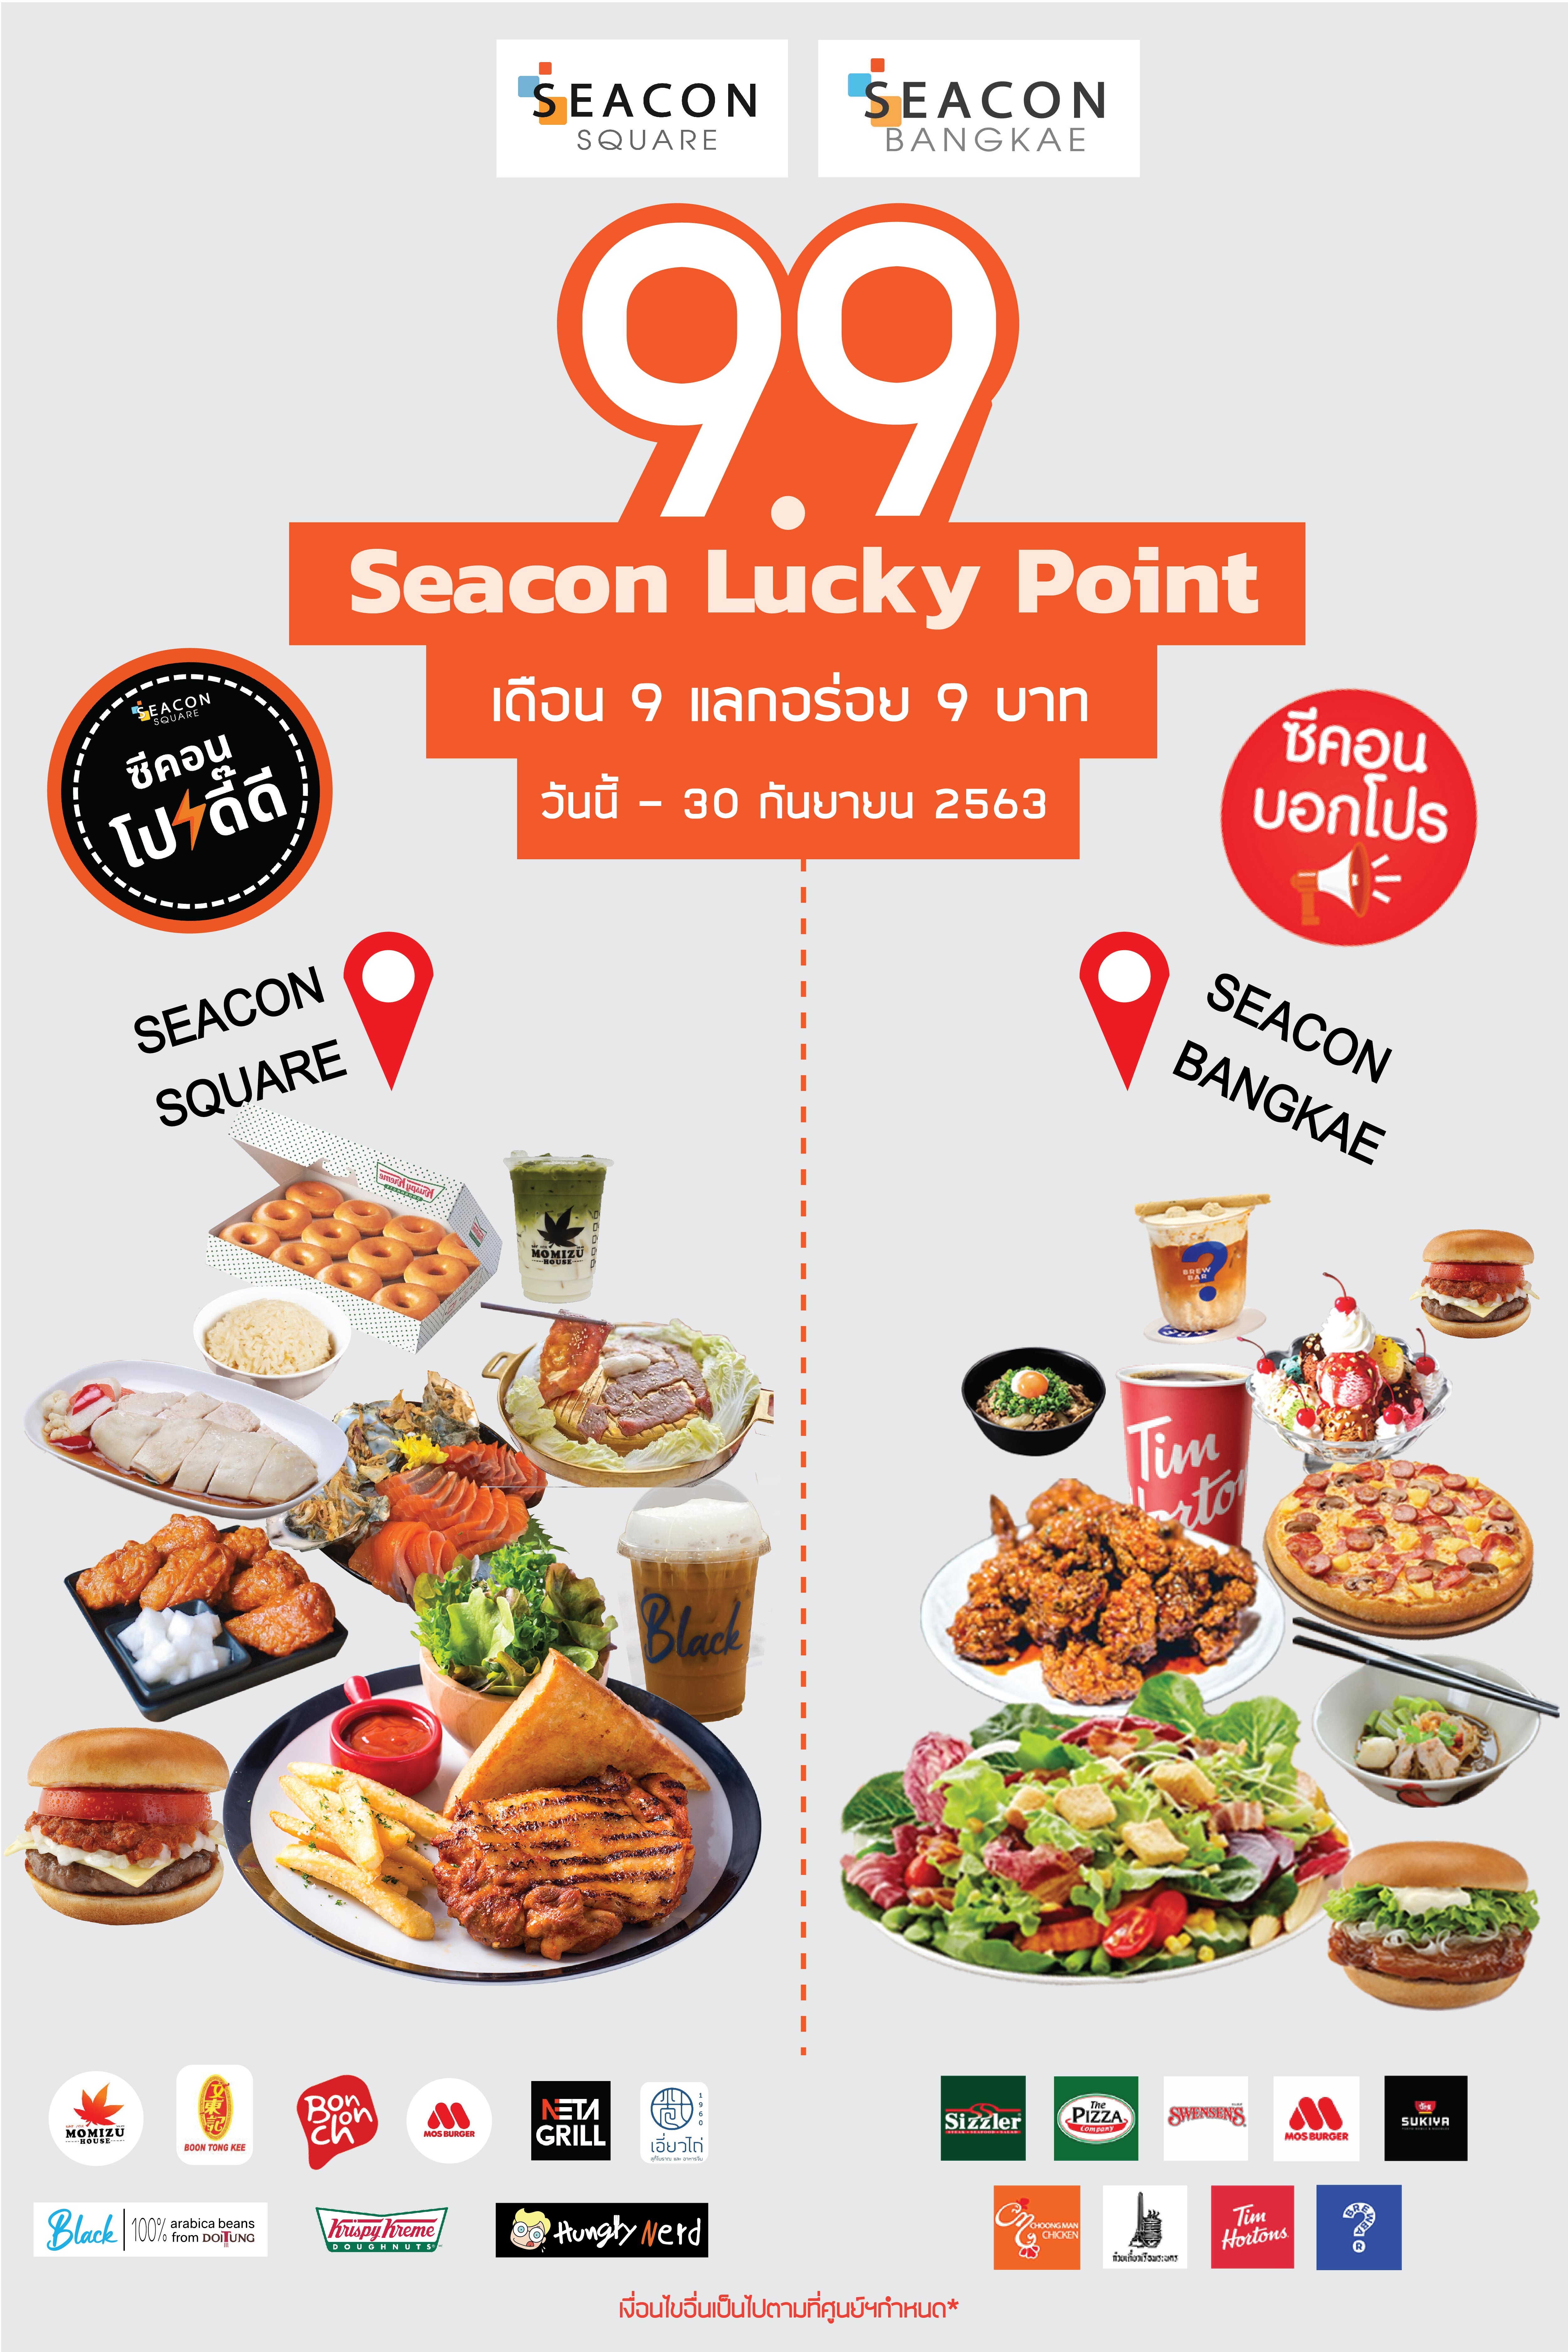 ซีคอนสแควร์ และซีคอน บางแค  ส่งแคมเปญใหญ่ “9.9 Seacon Lucky Point” เดือน 9 แลกอร่อย 9 บาท 9 ร้านดัง!!